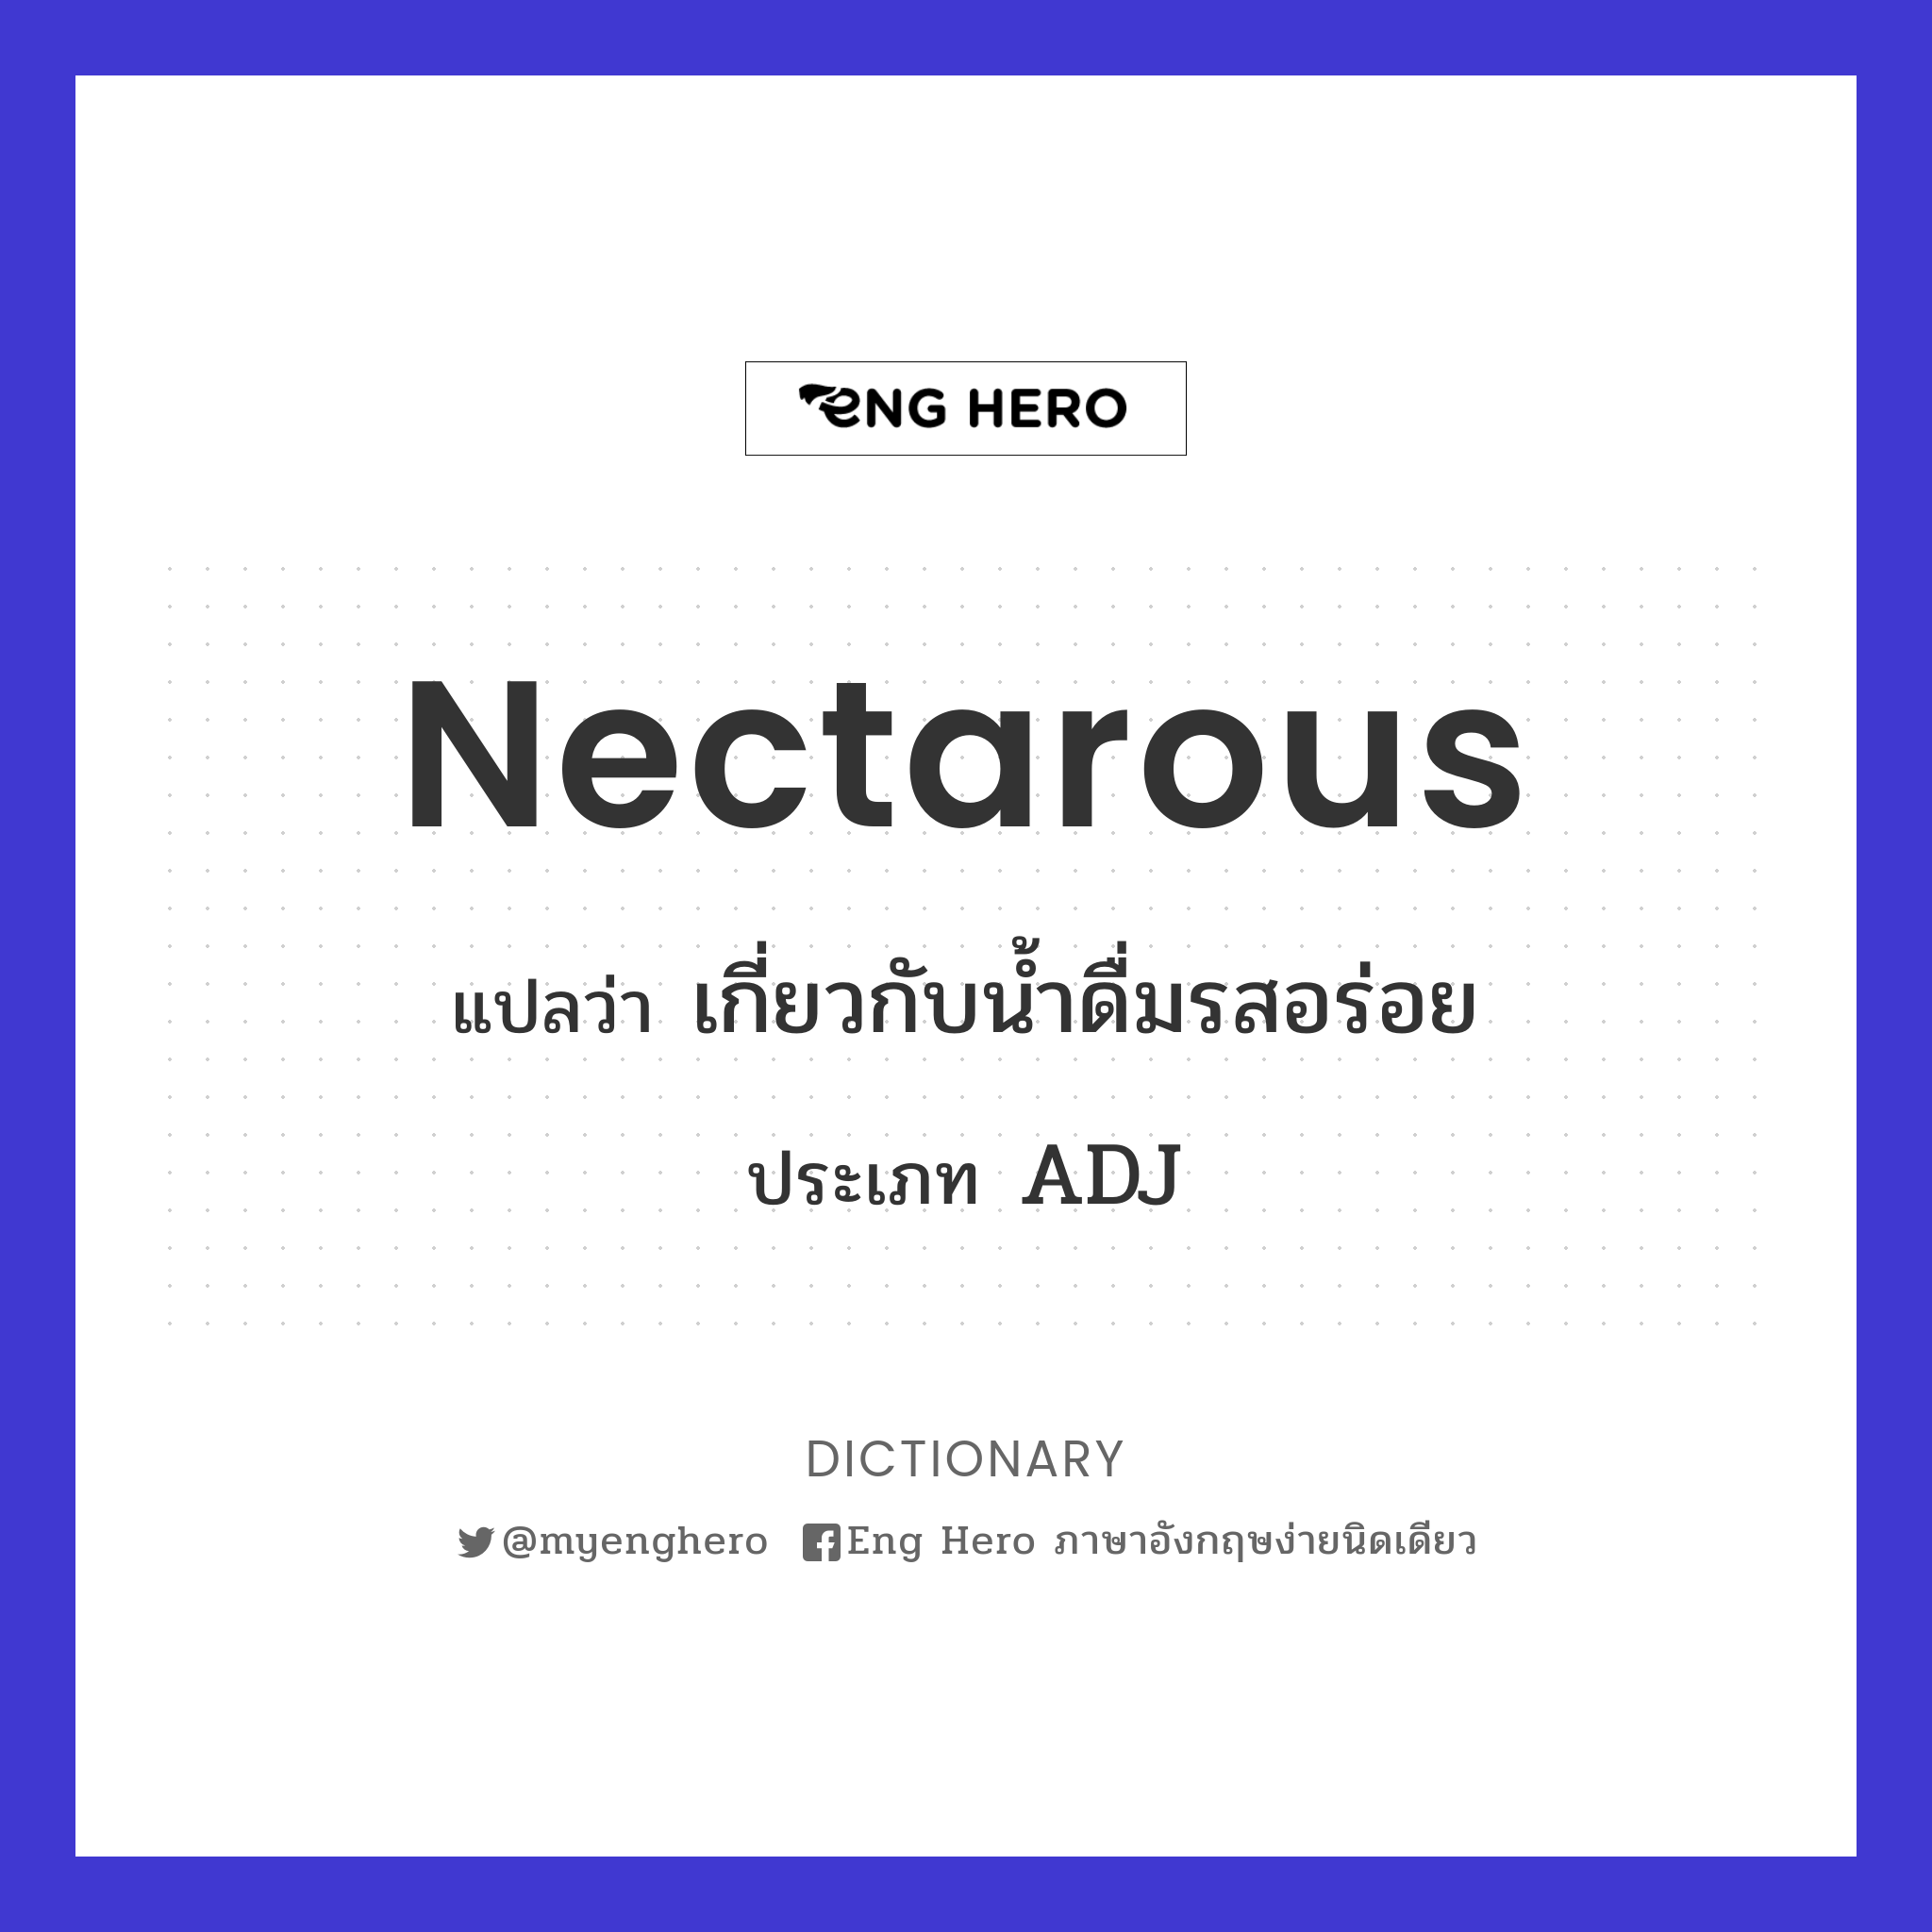 nectarous